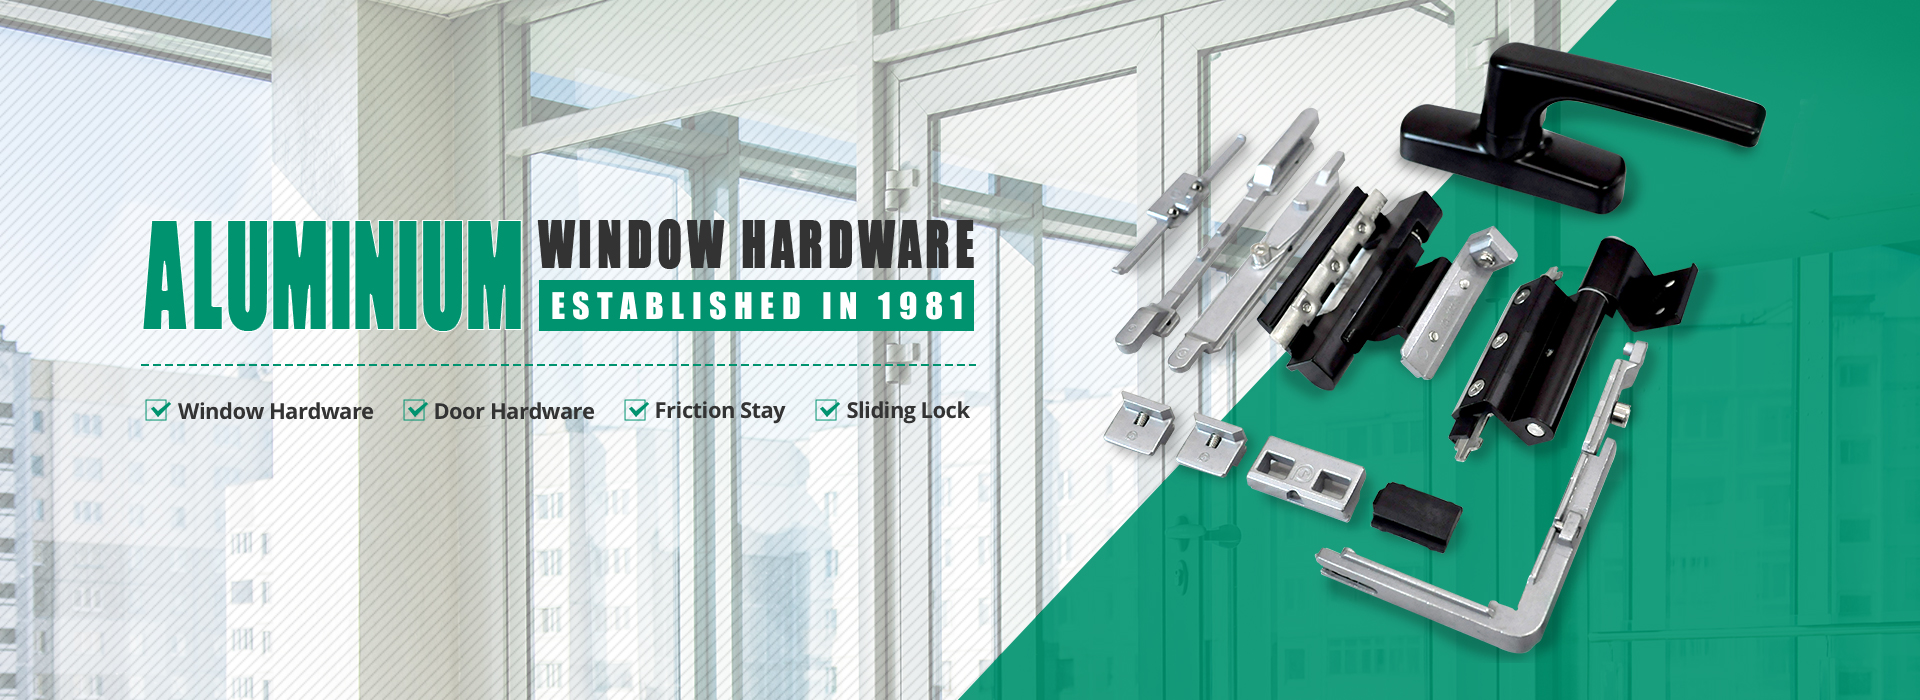 window-door-hardware-manufacturer